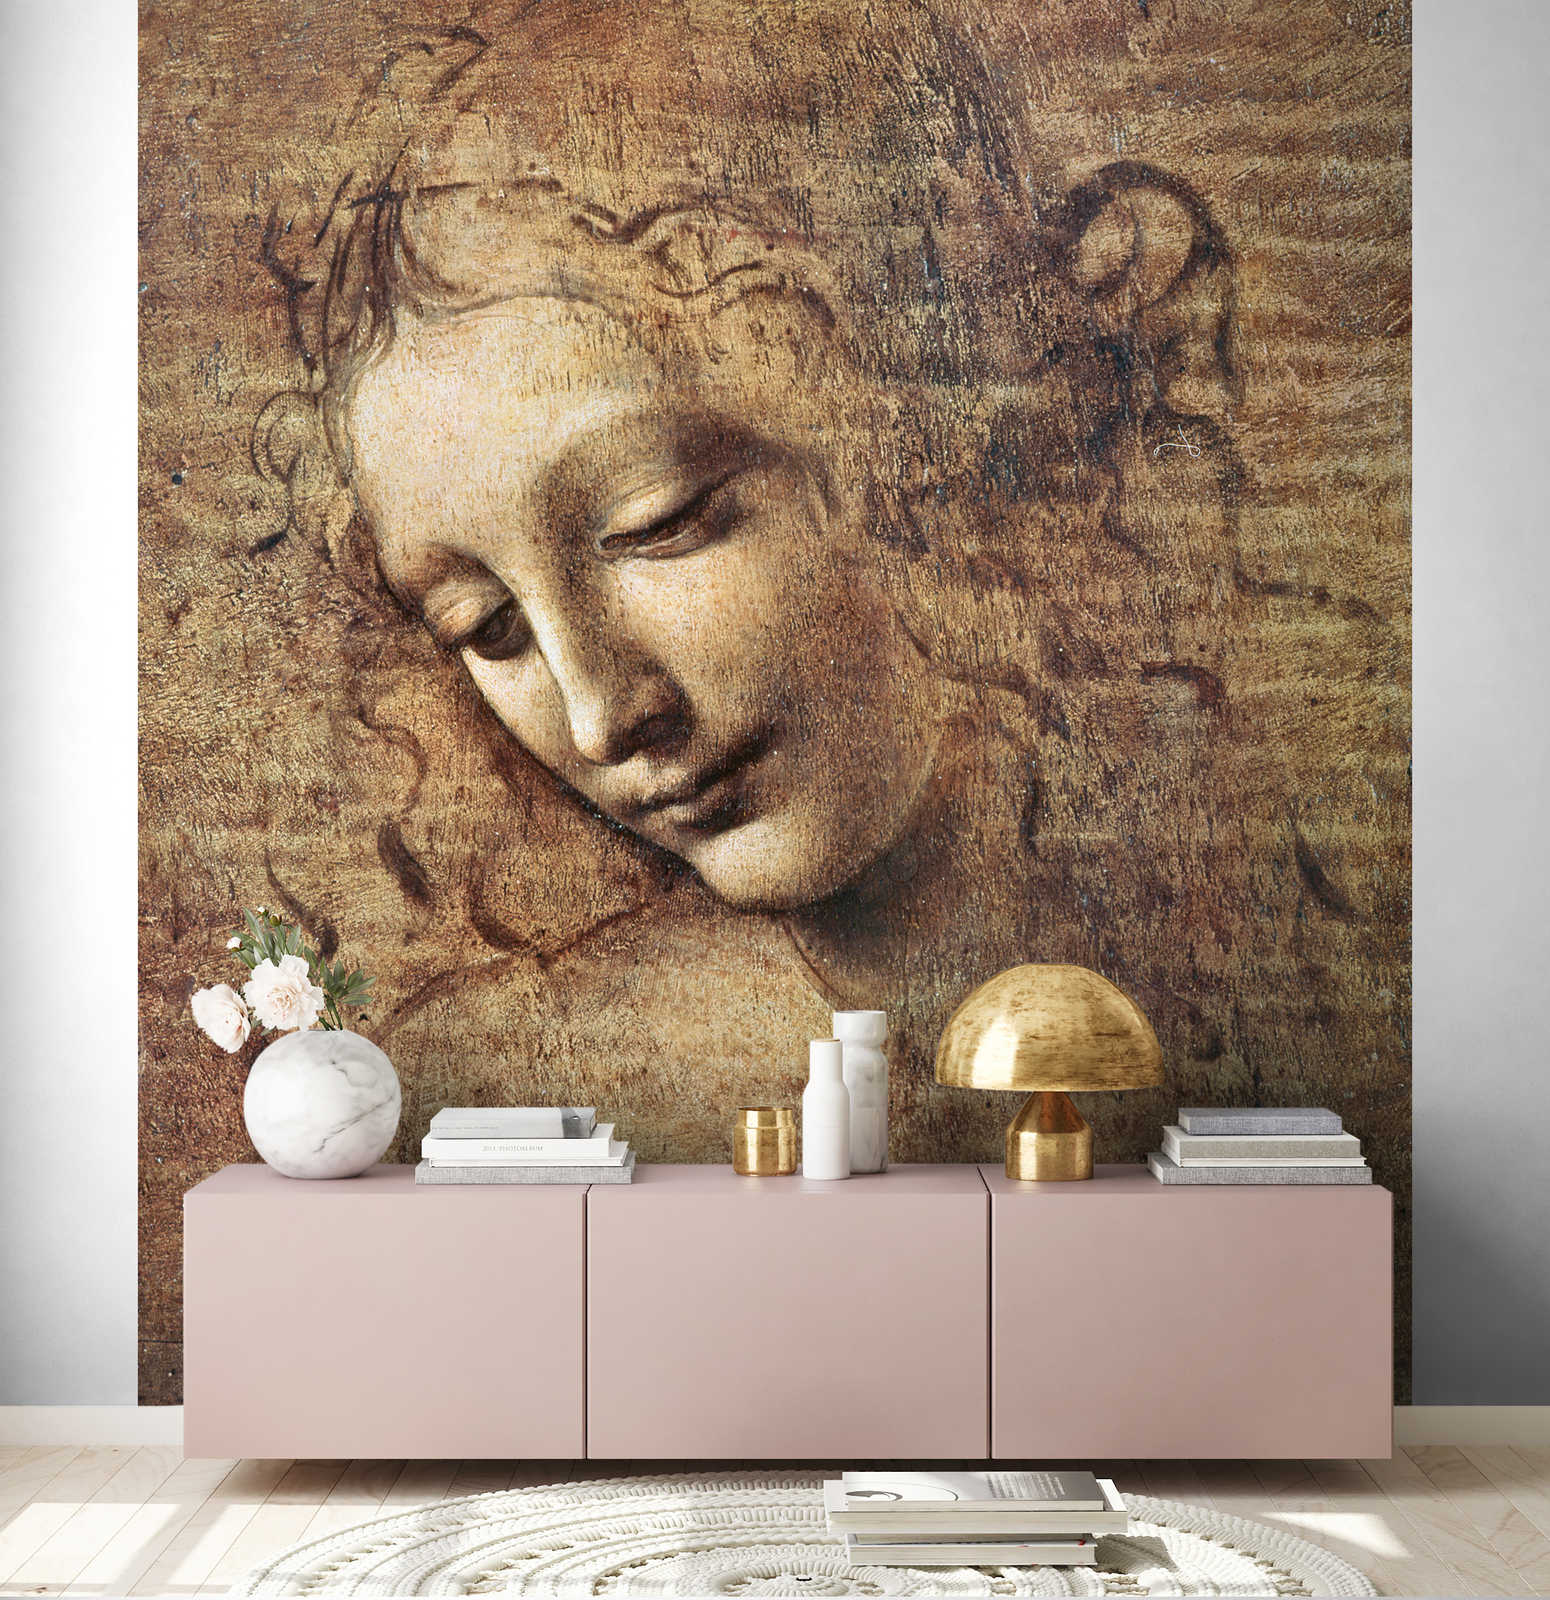             Papier peint "Tête de jeune femme aux cheveux ébouriffés" de Léonard de Vinci
        